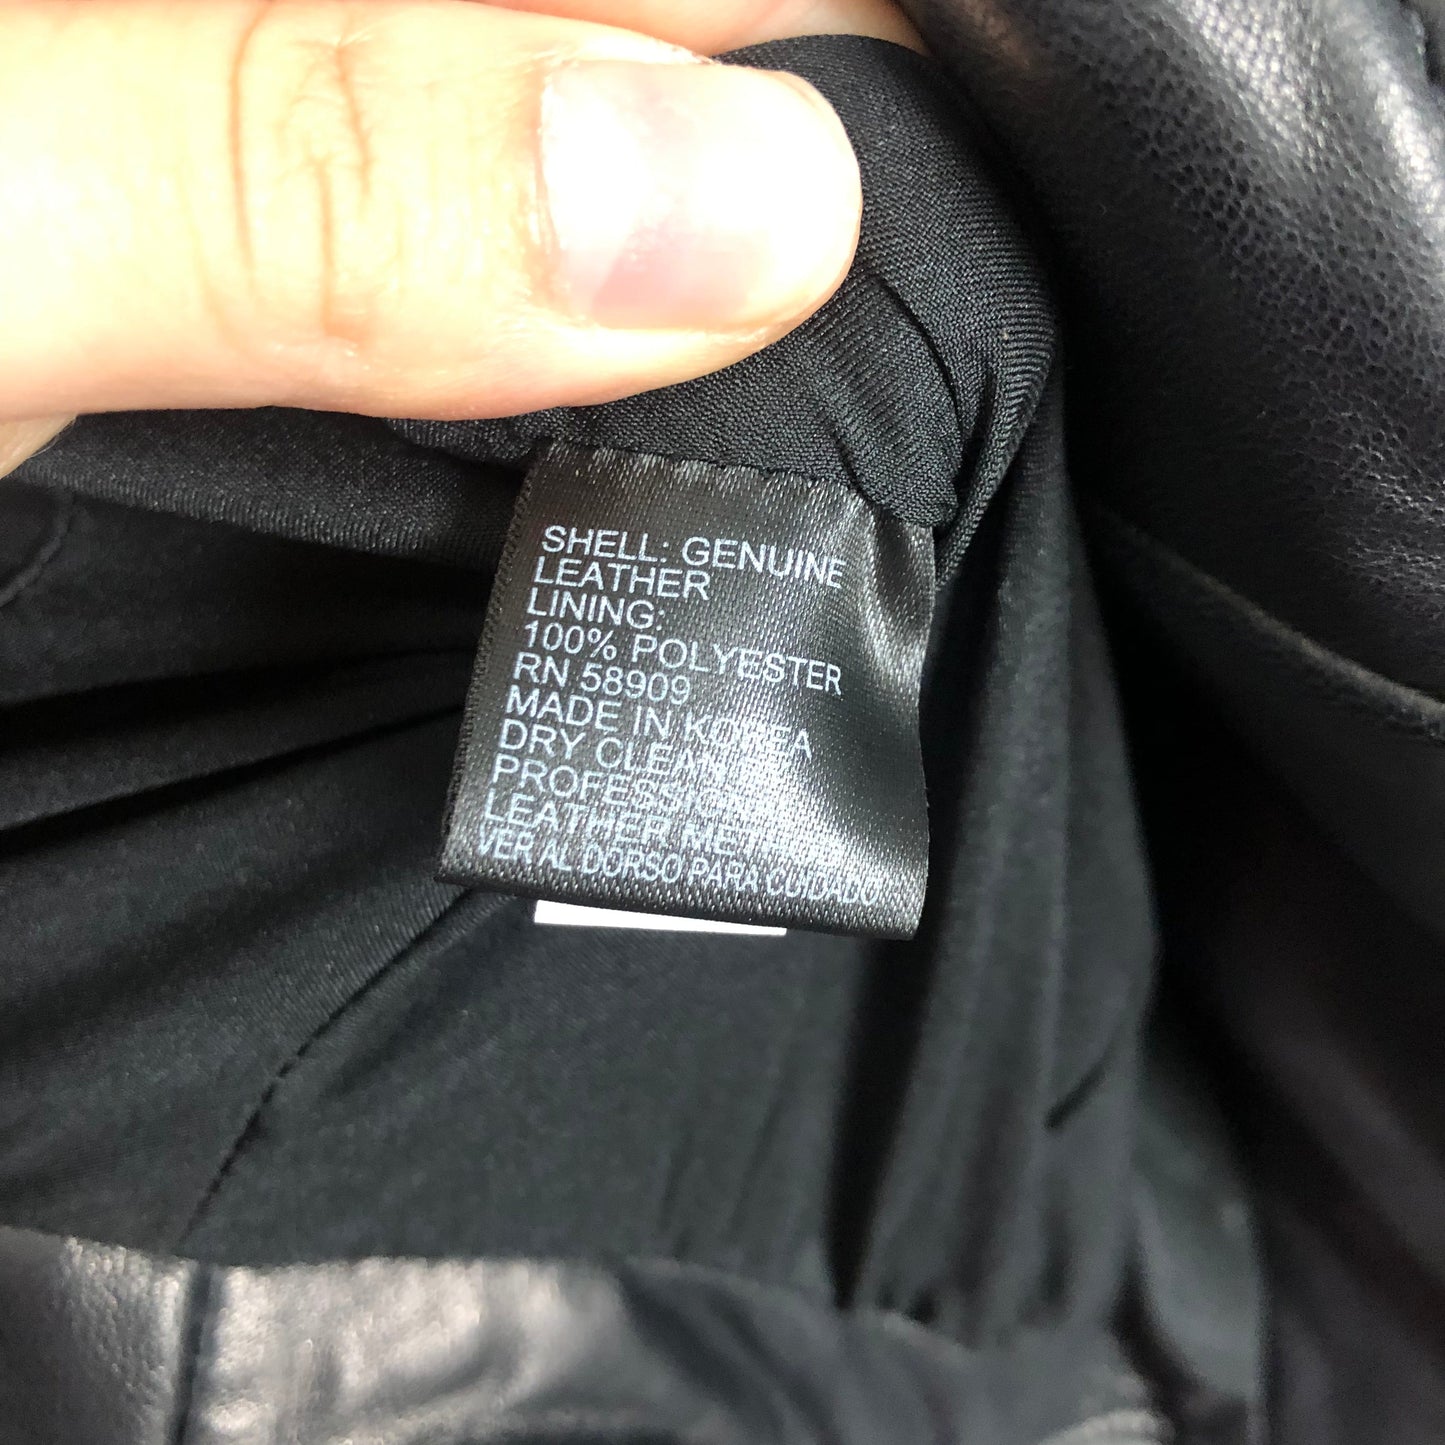 Black Jacket Moto Leather Antonio Melani, Size Xs